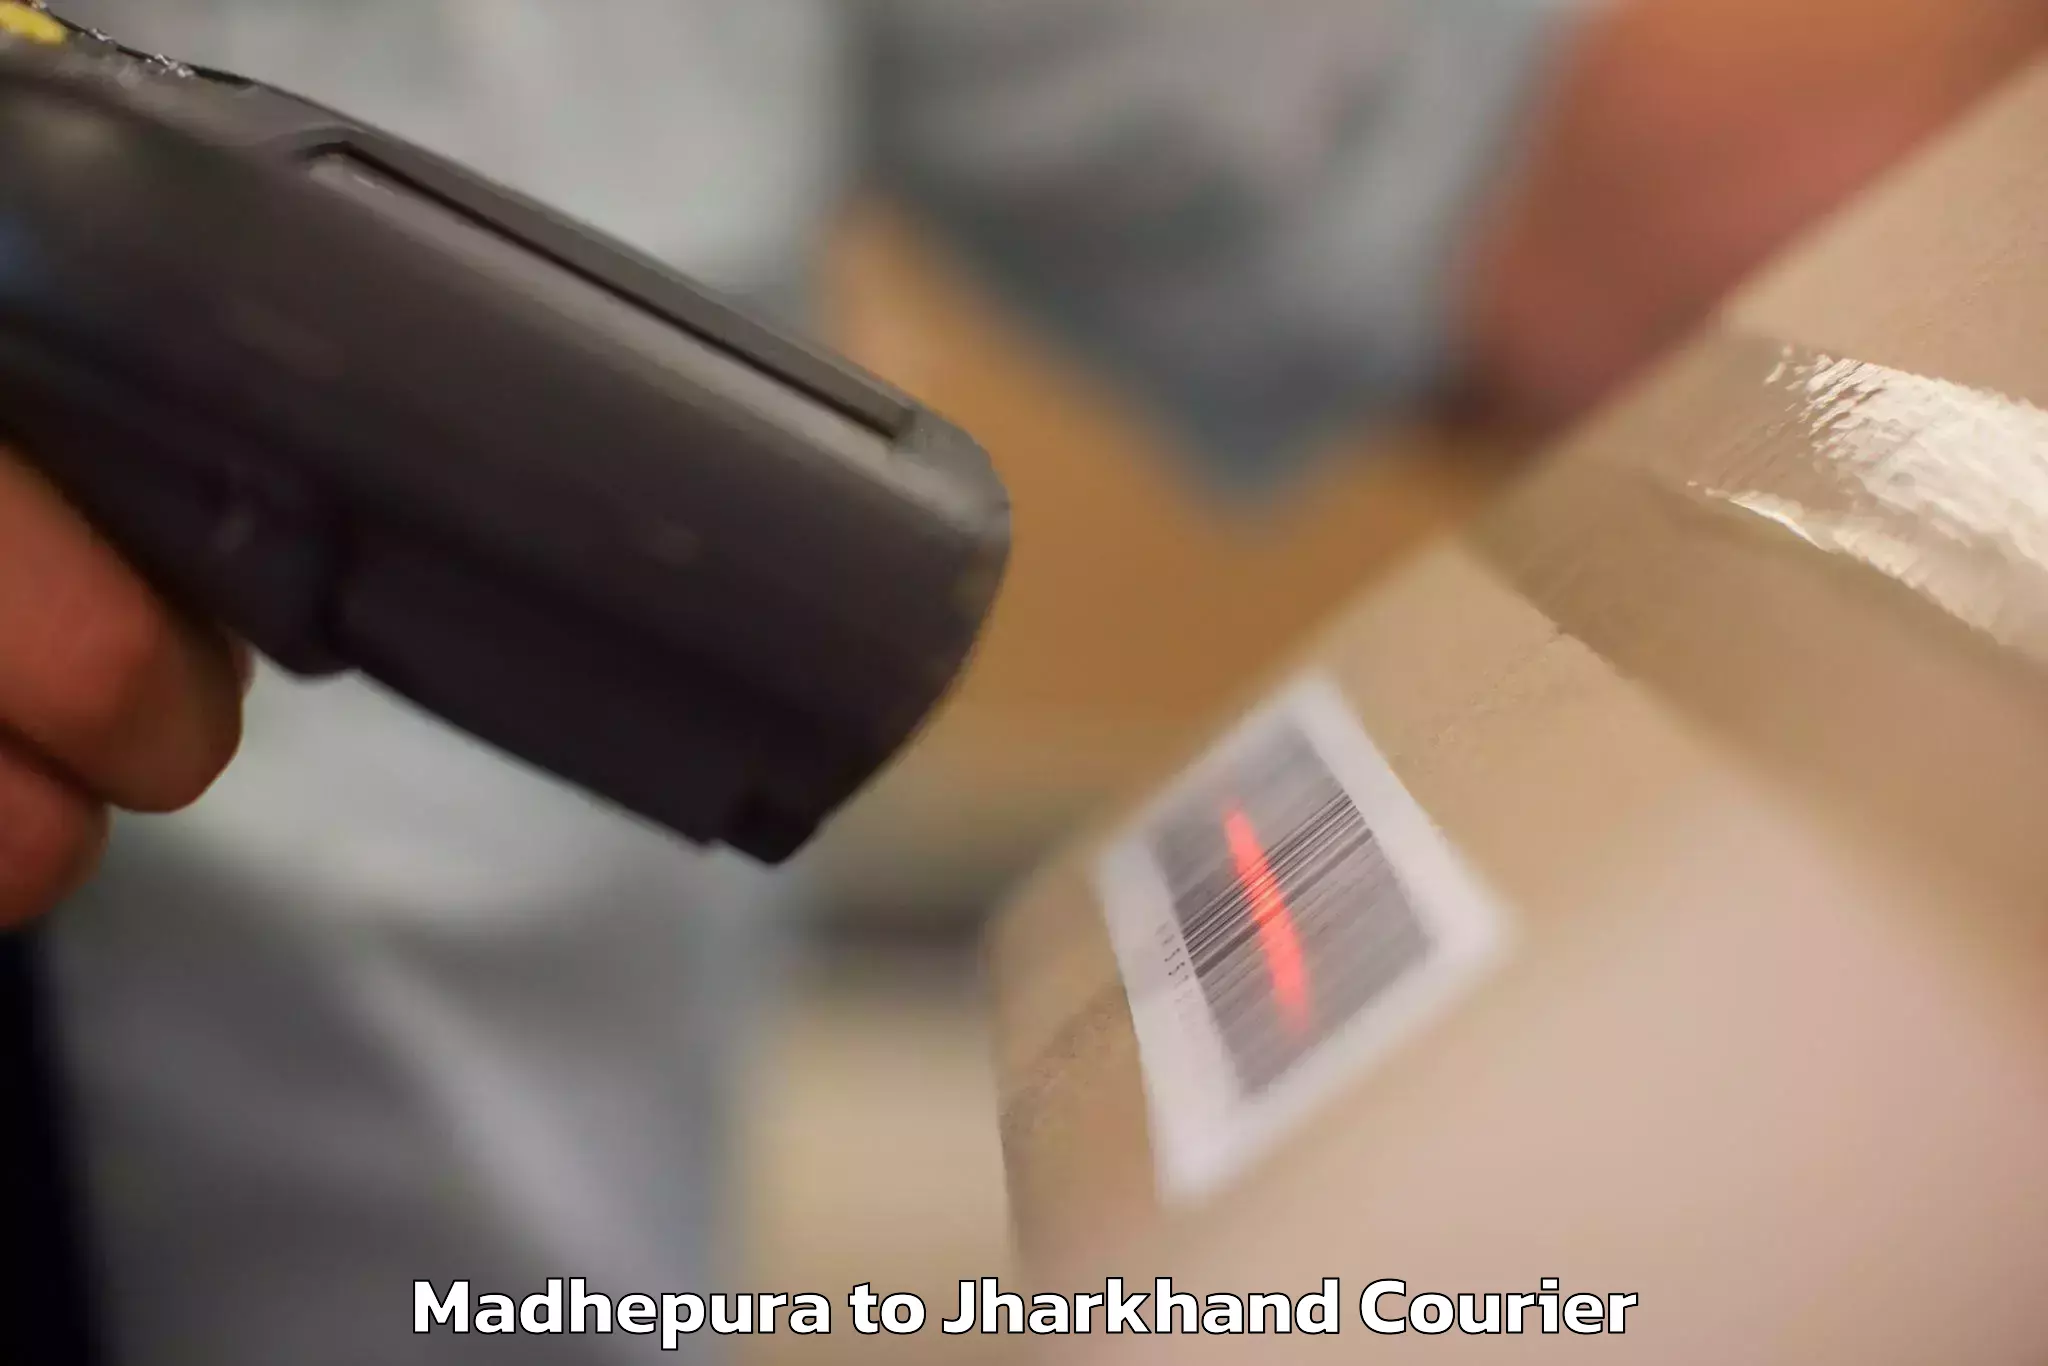 Baggage shipping service Madhepura to Jharkhand